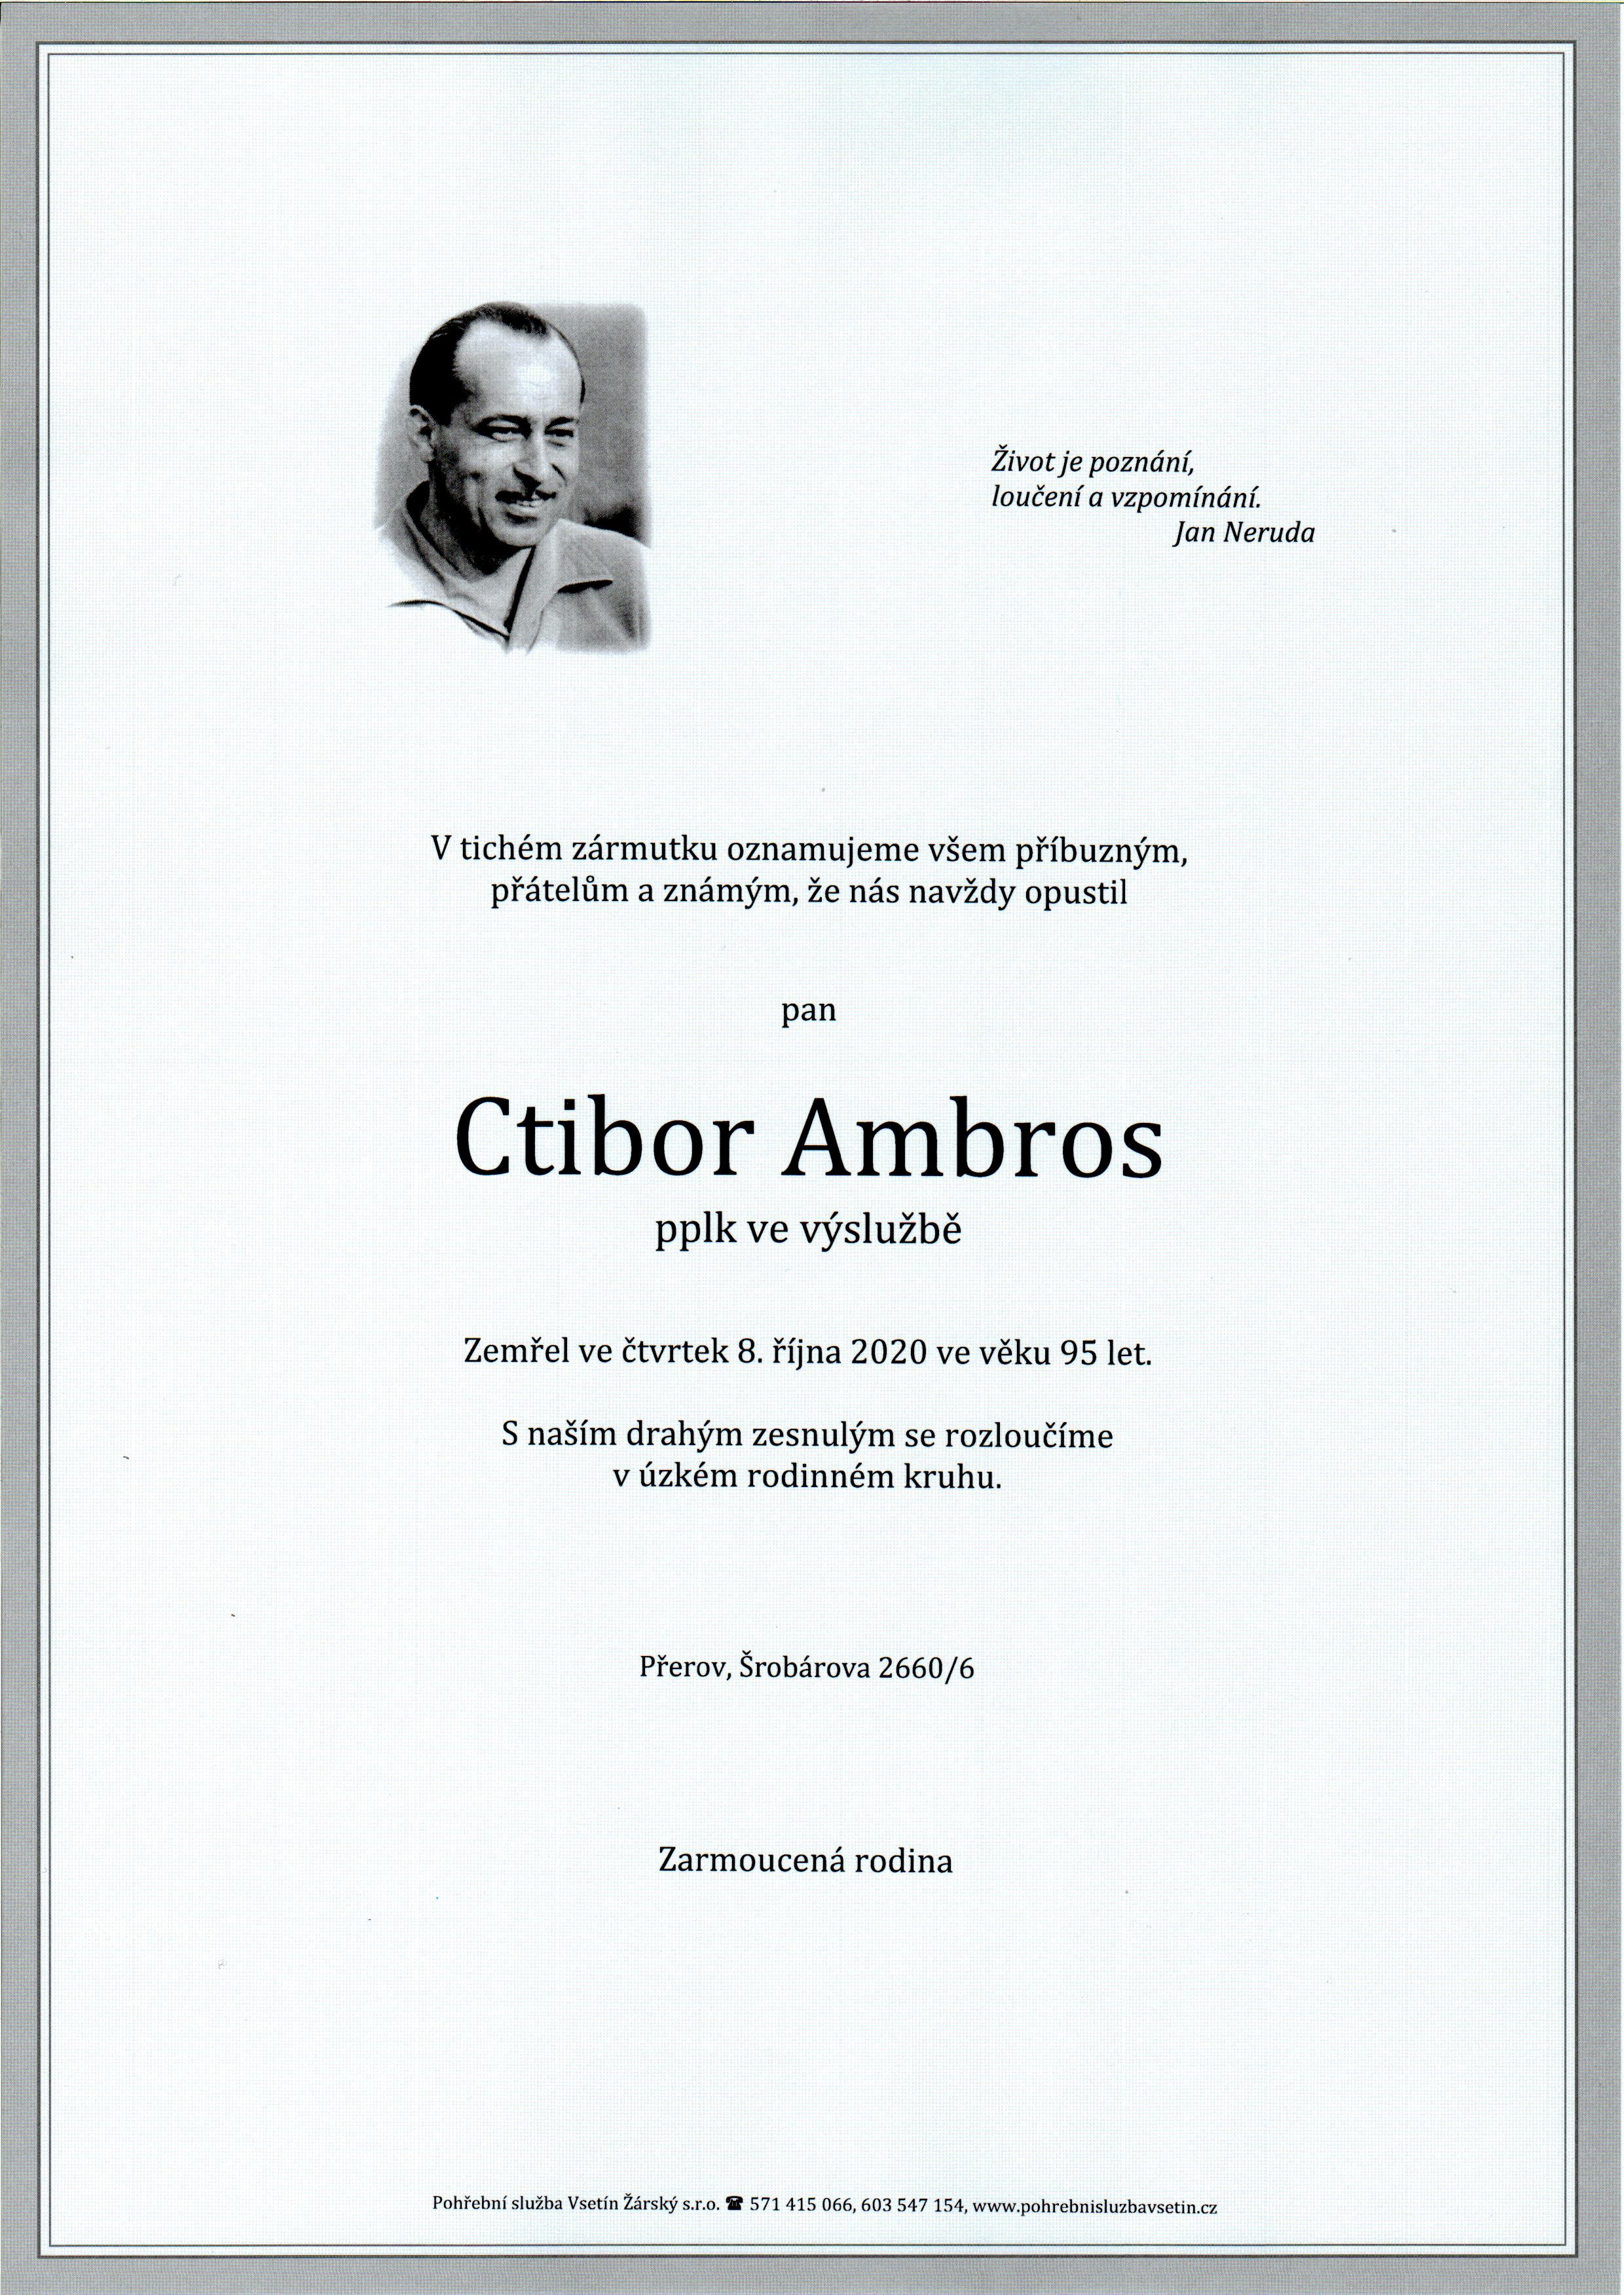 Ctibor Ambros